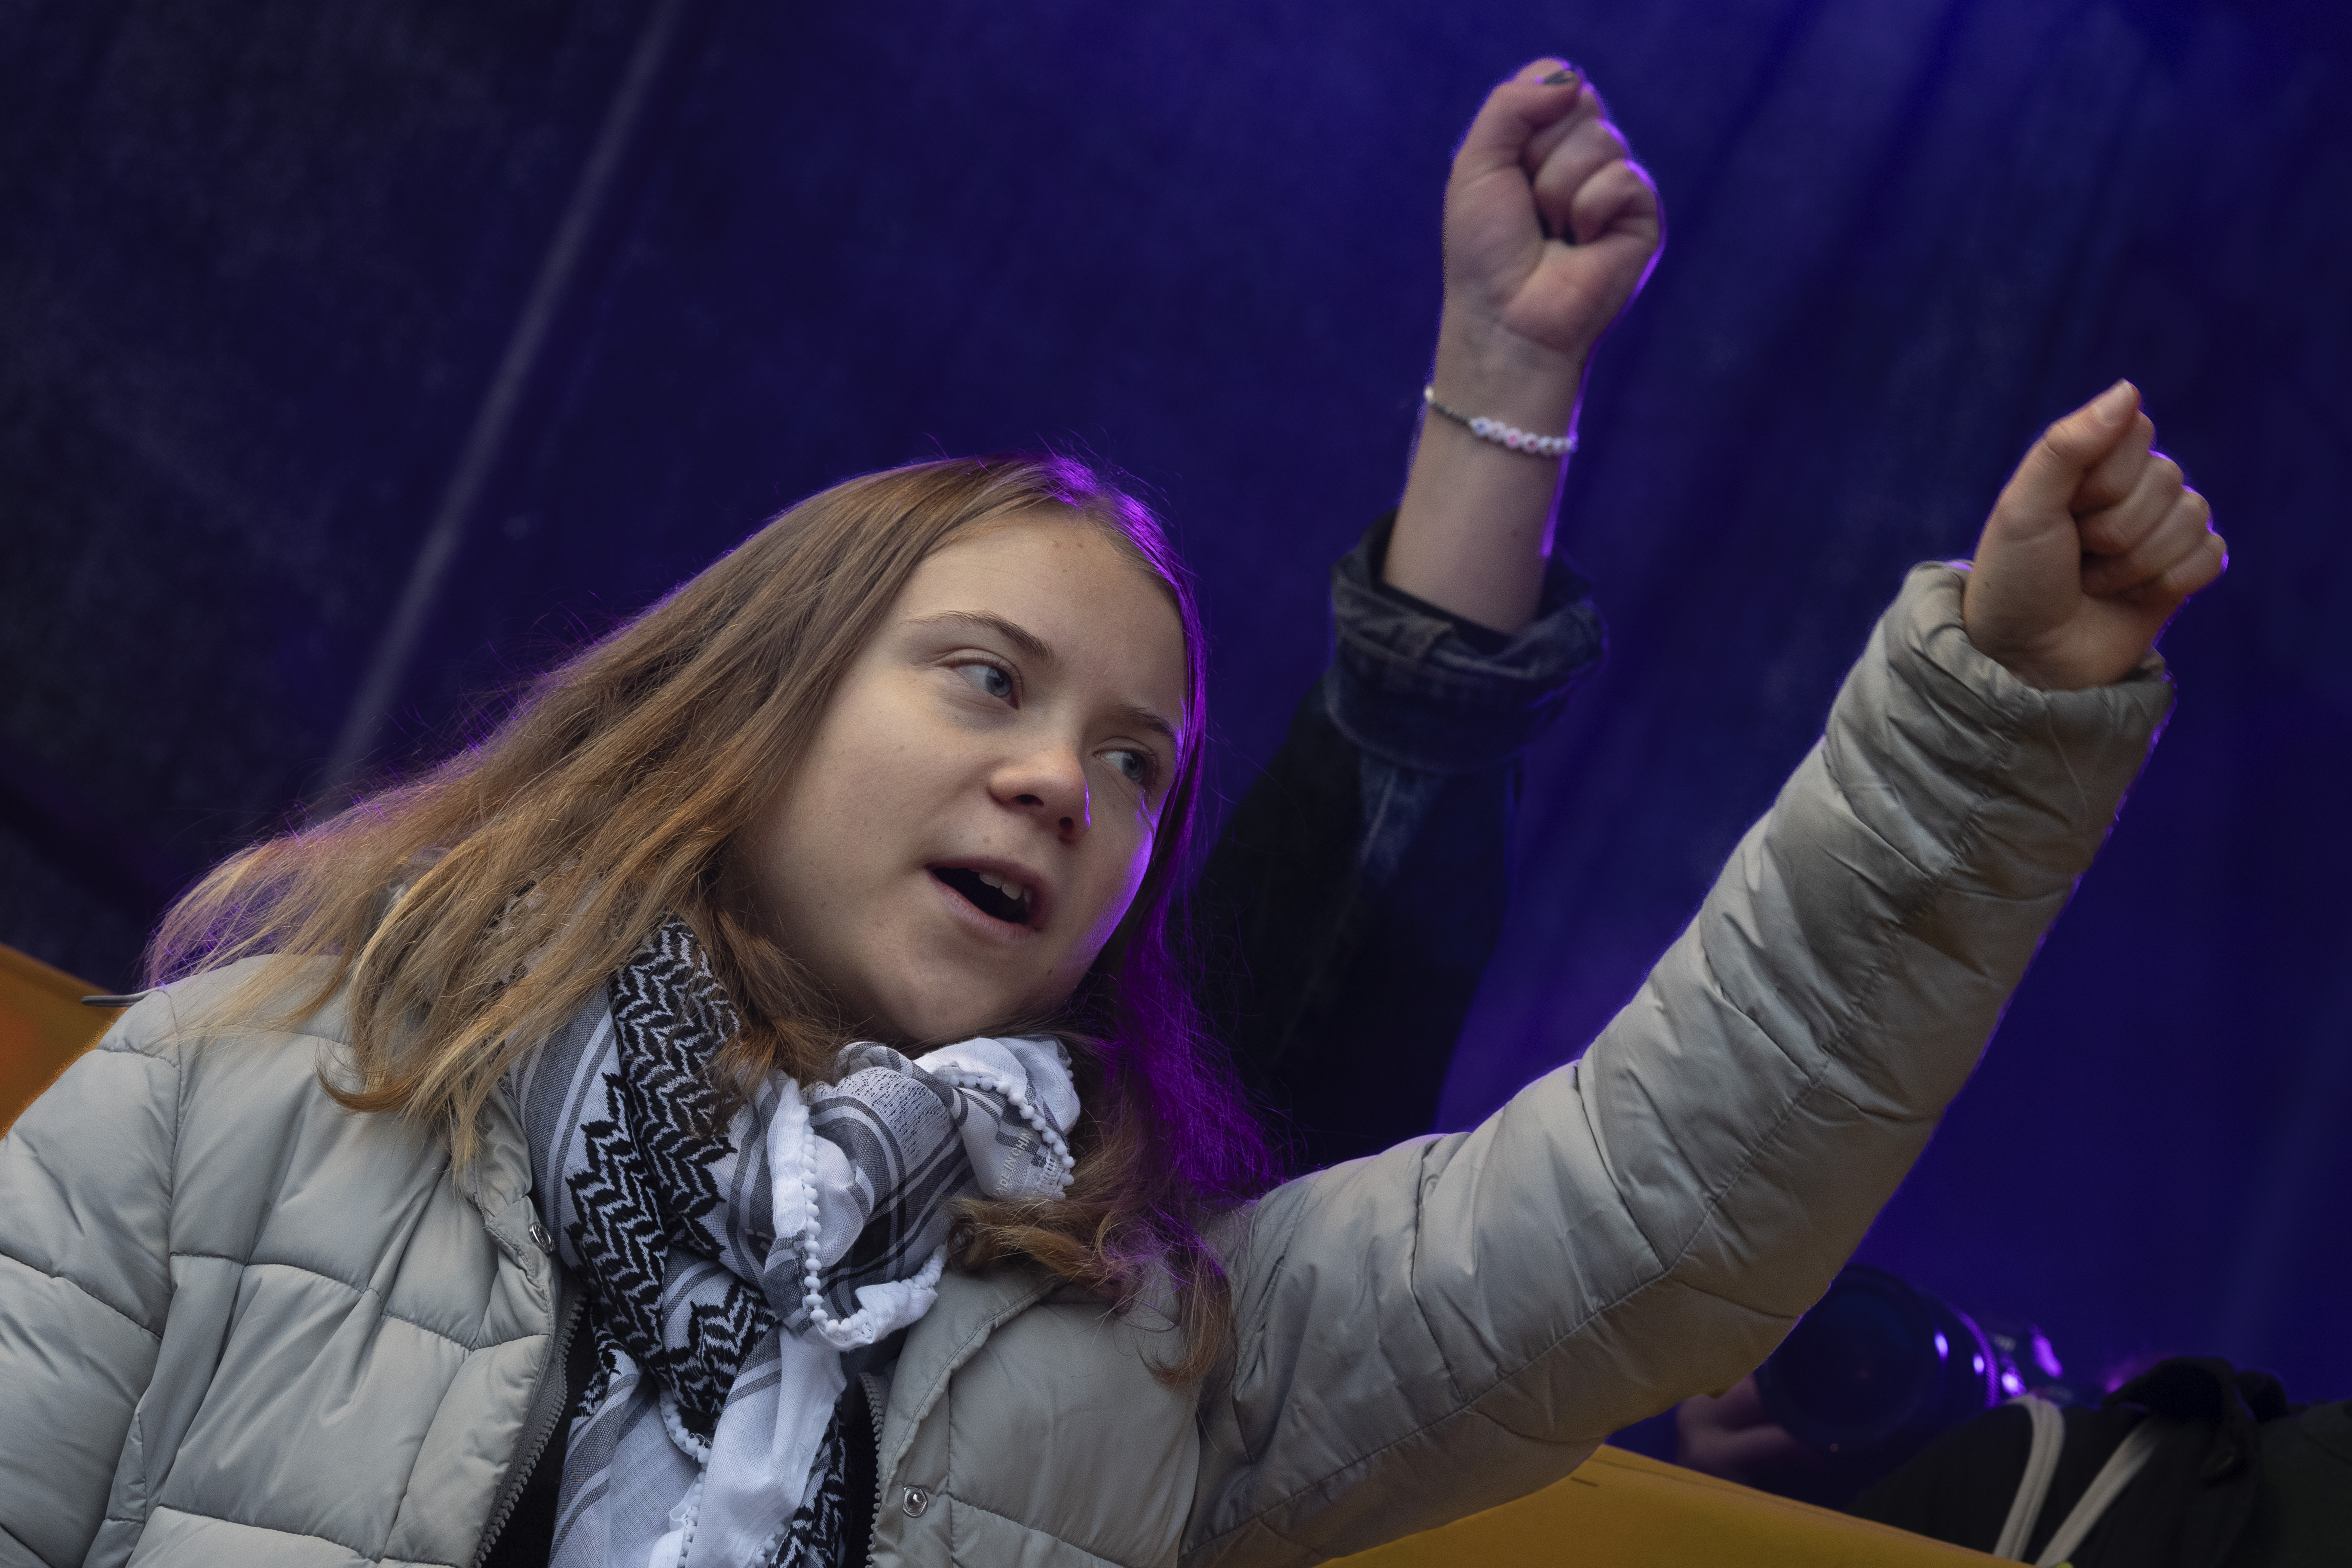 Greta Thunberg mit erhobener Faust, sie ruft etwas.